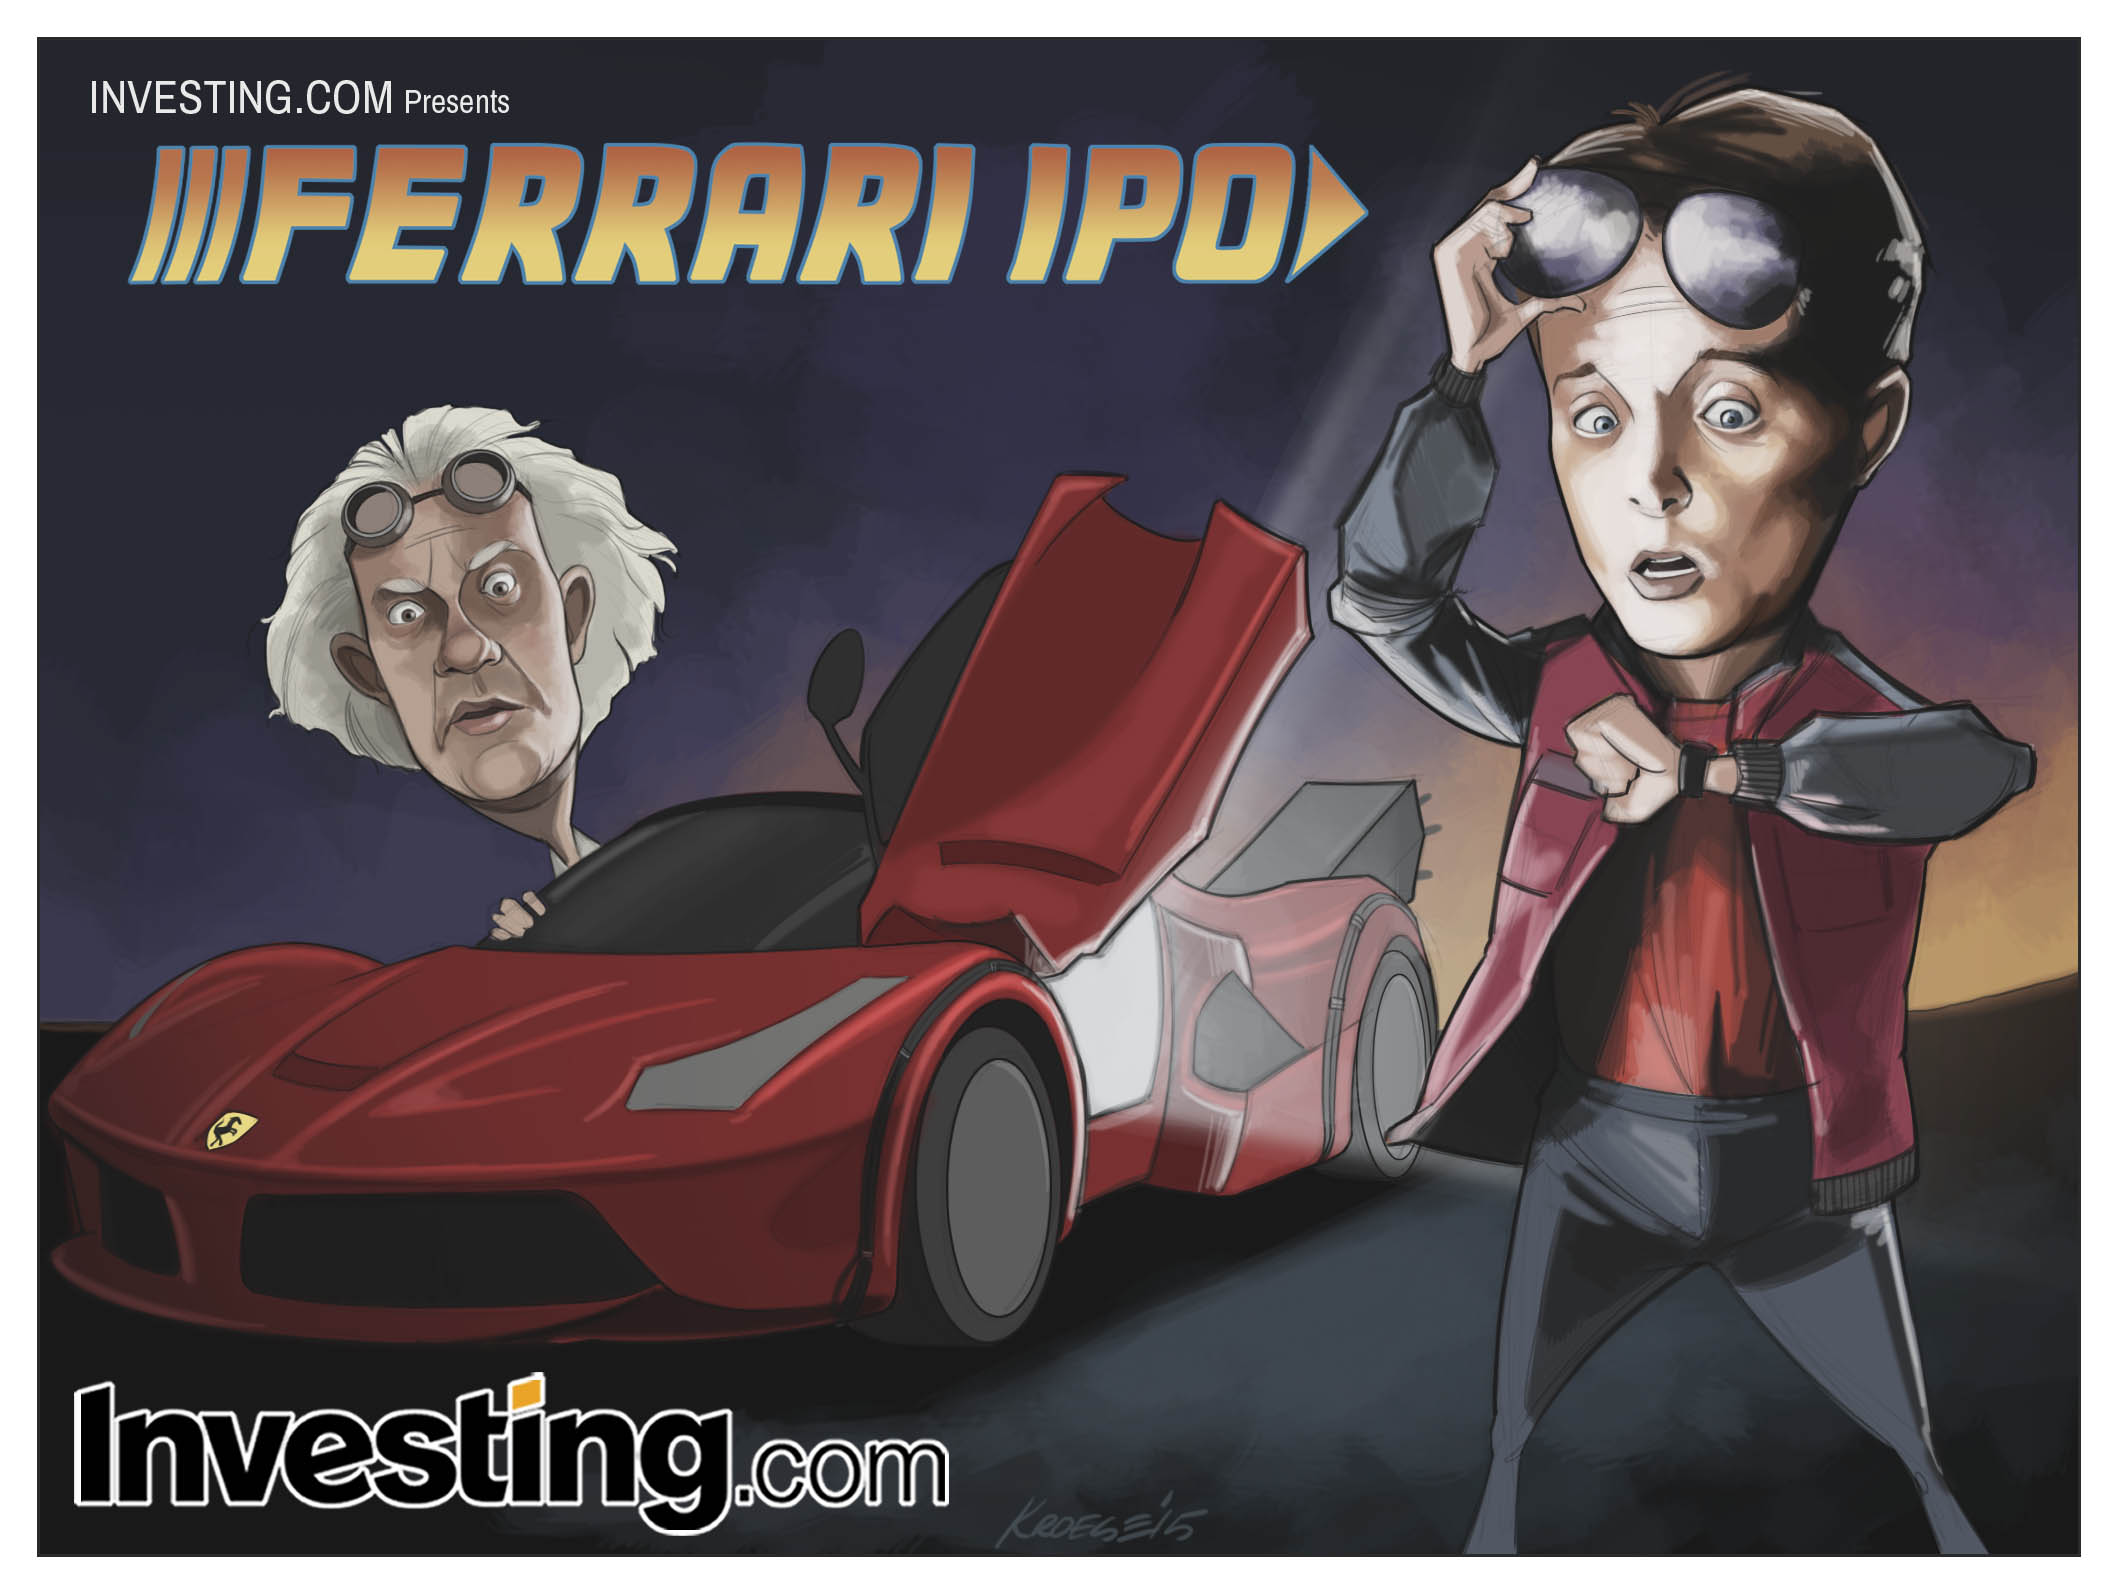 Ferrari IPO's into the future